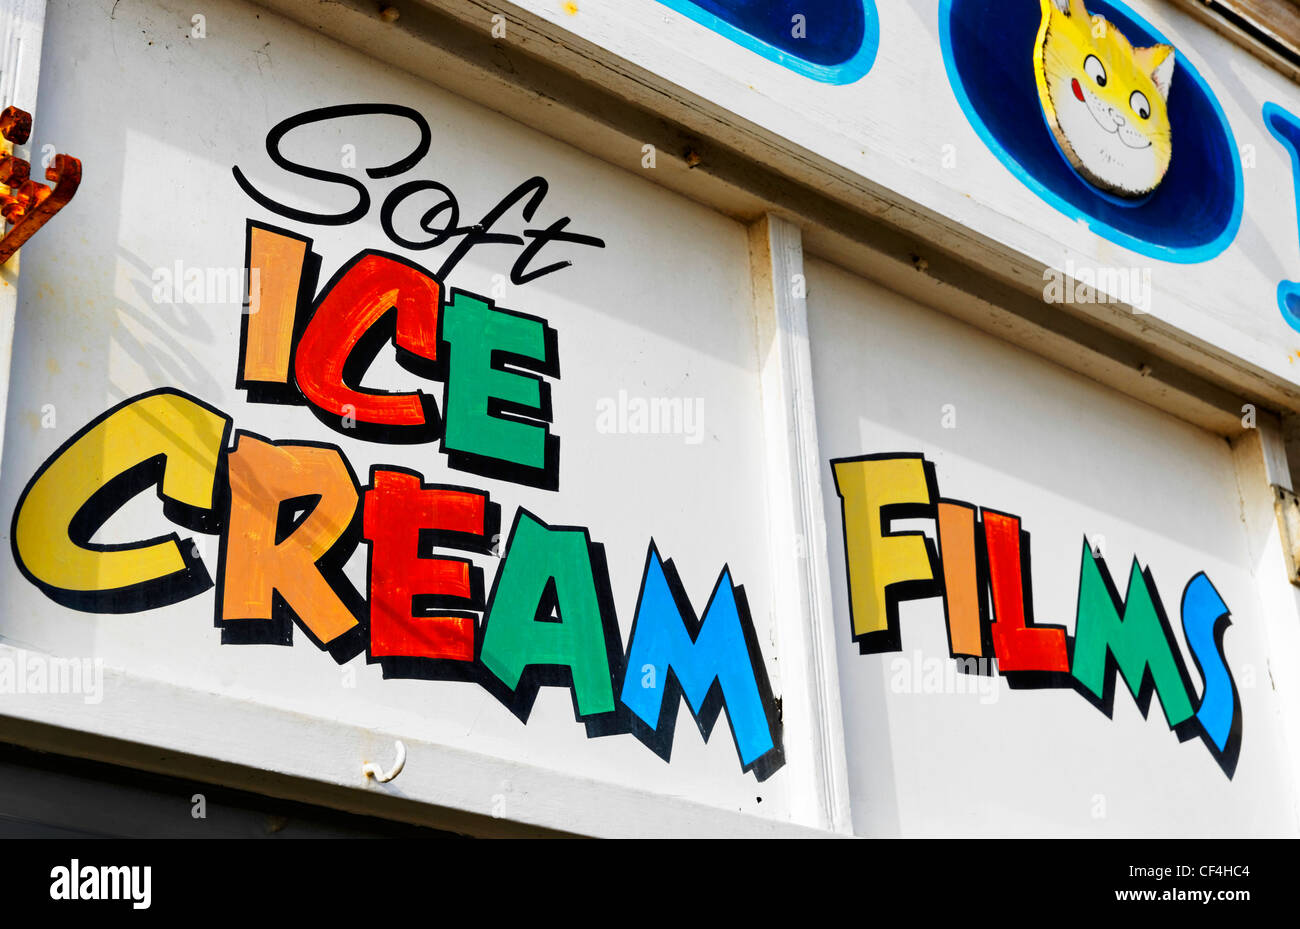 Weiche Eis und Filme geschrieben in bunten Lettern auf einem Schild über einem Geschäft am Strand von Paignton auf die englischen Rivier Stockfoto